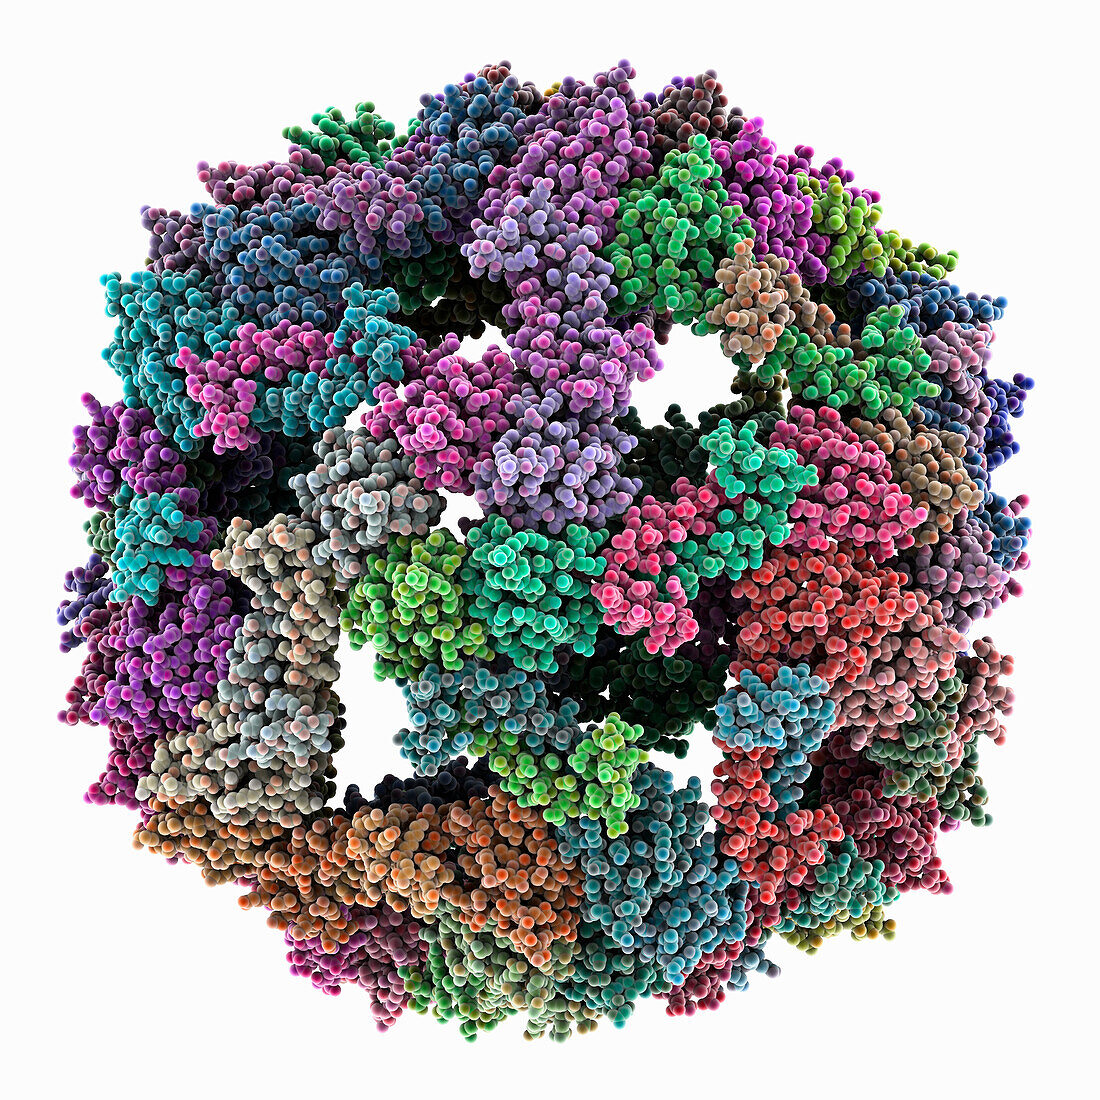 Artificial nanocage using barium atoms, illustration